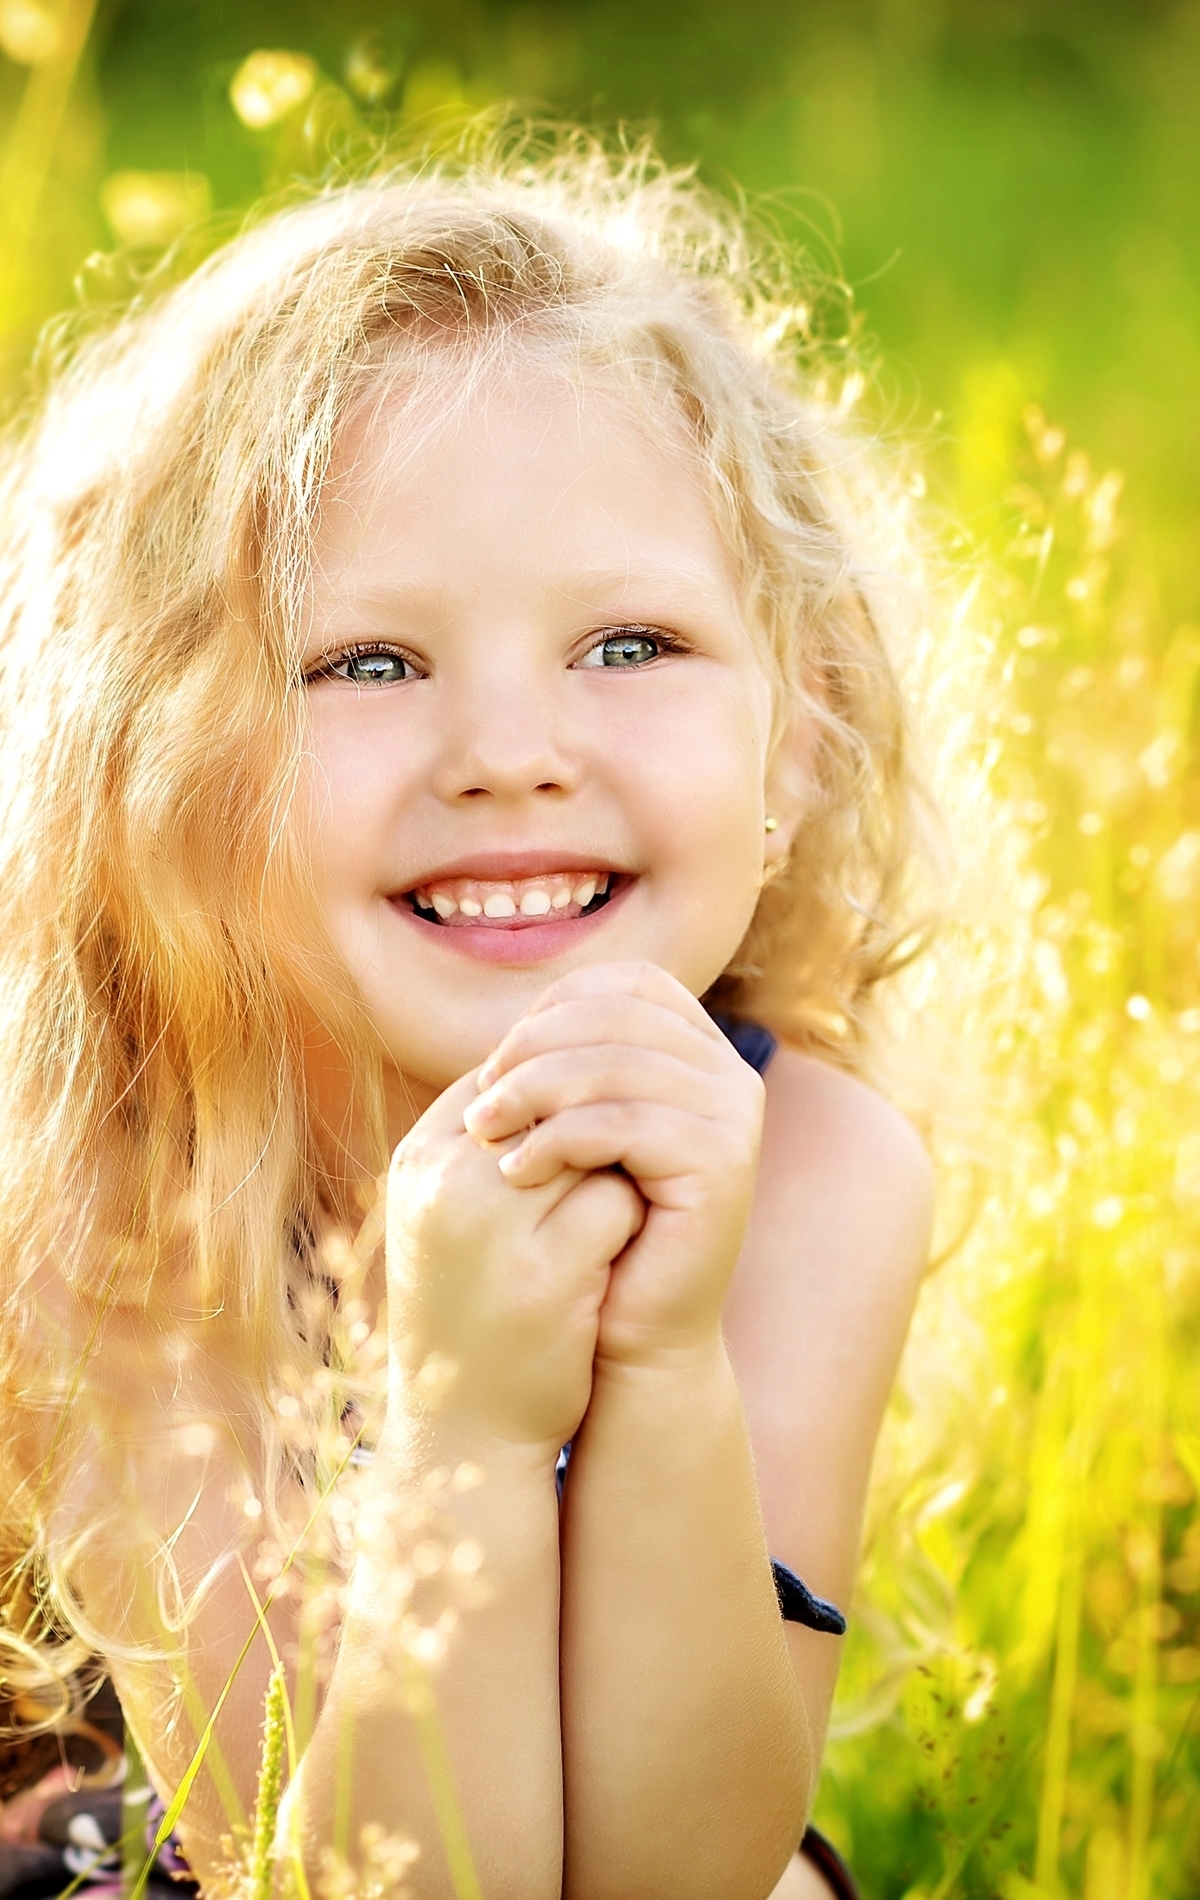 Картинка: Девочка, лицо, светлые волосы, улыбка, настроение, лето, трава